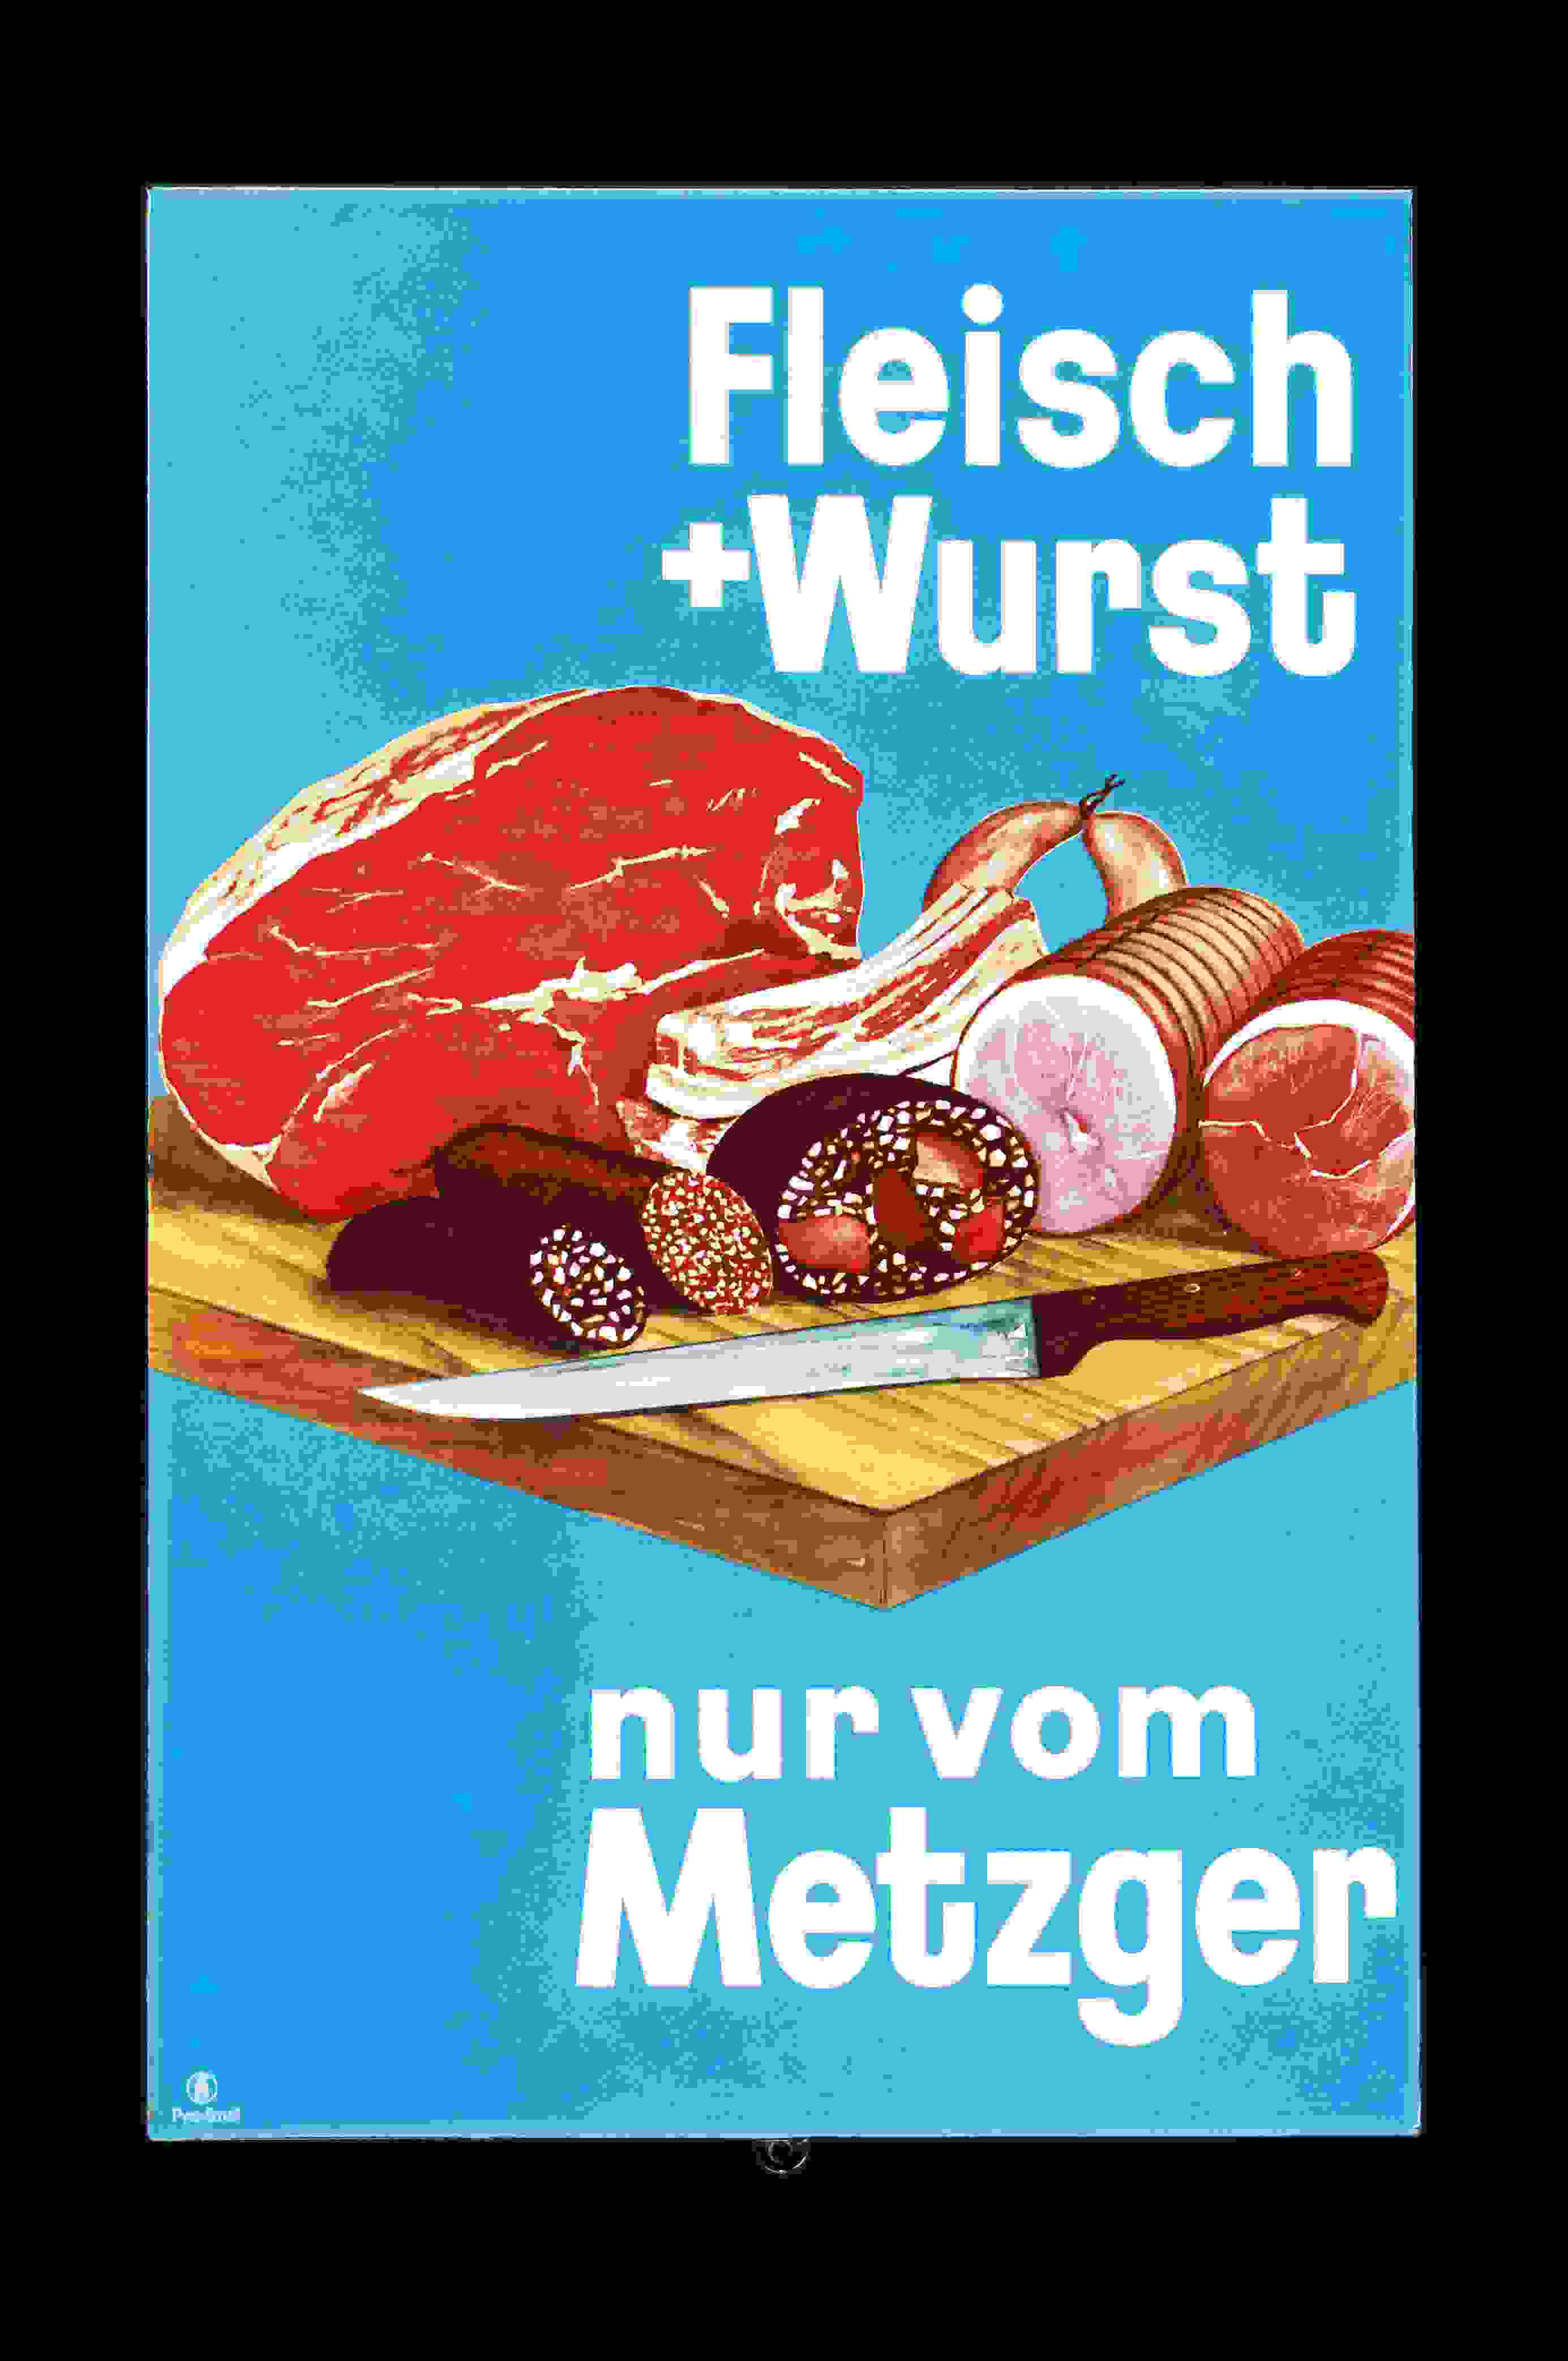 Fleisch + Wurst nur vom Metzger 